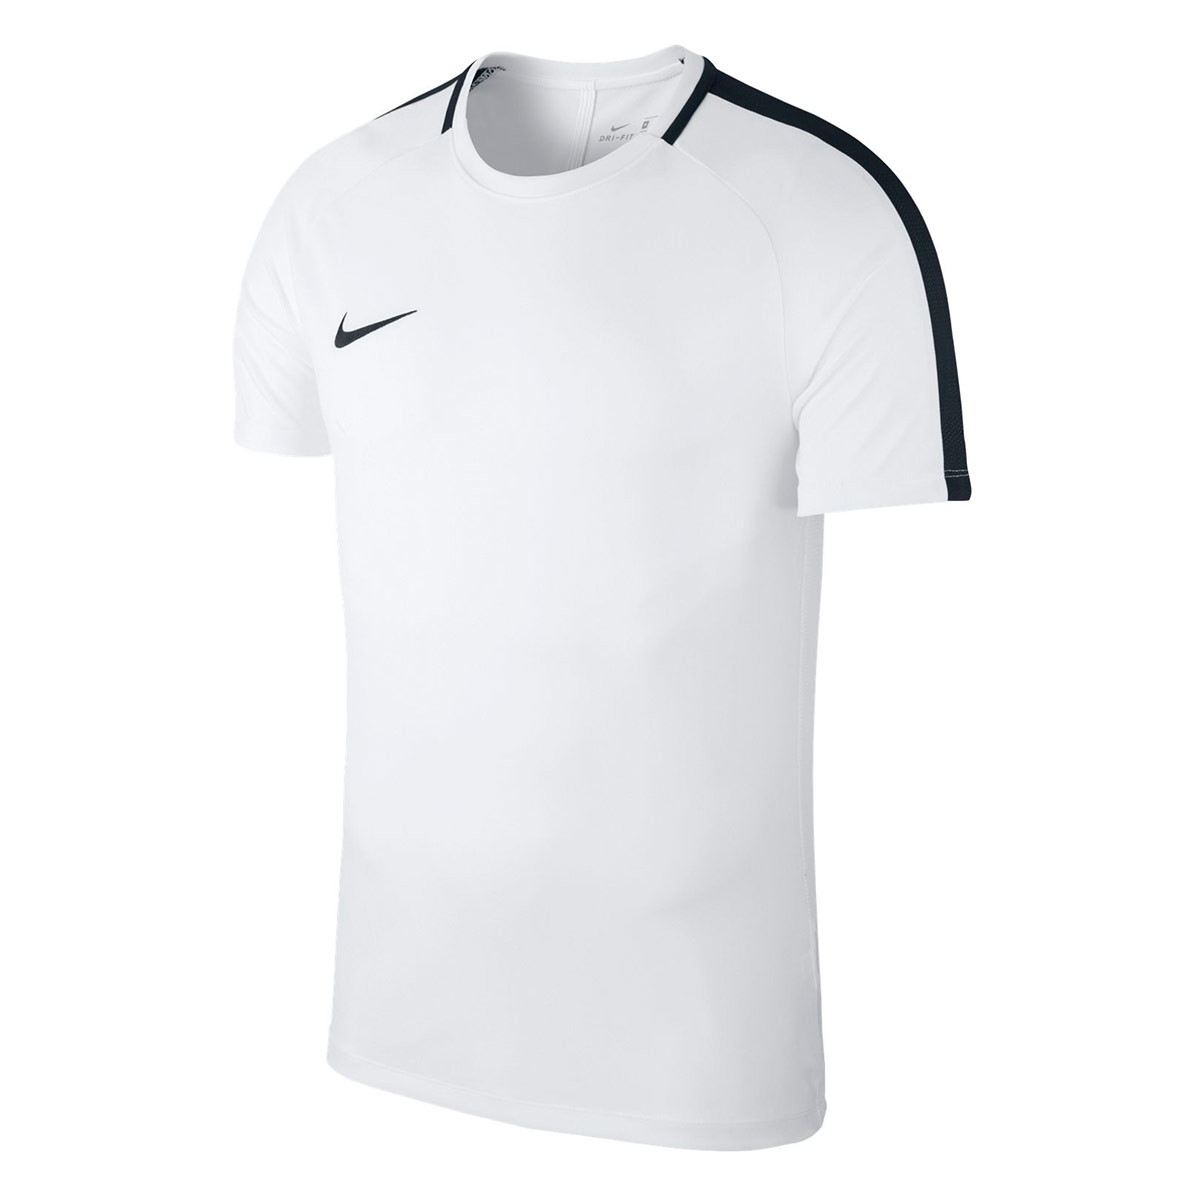 Playera Nike Academy 18 Training m/c White-Black - Tienda de fútbol Fútbol  Emotion